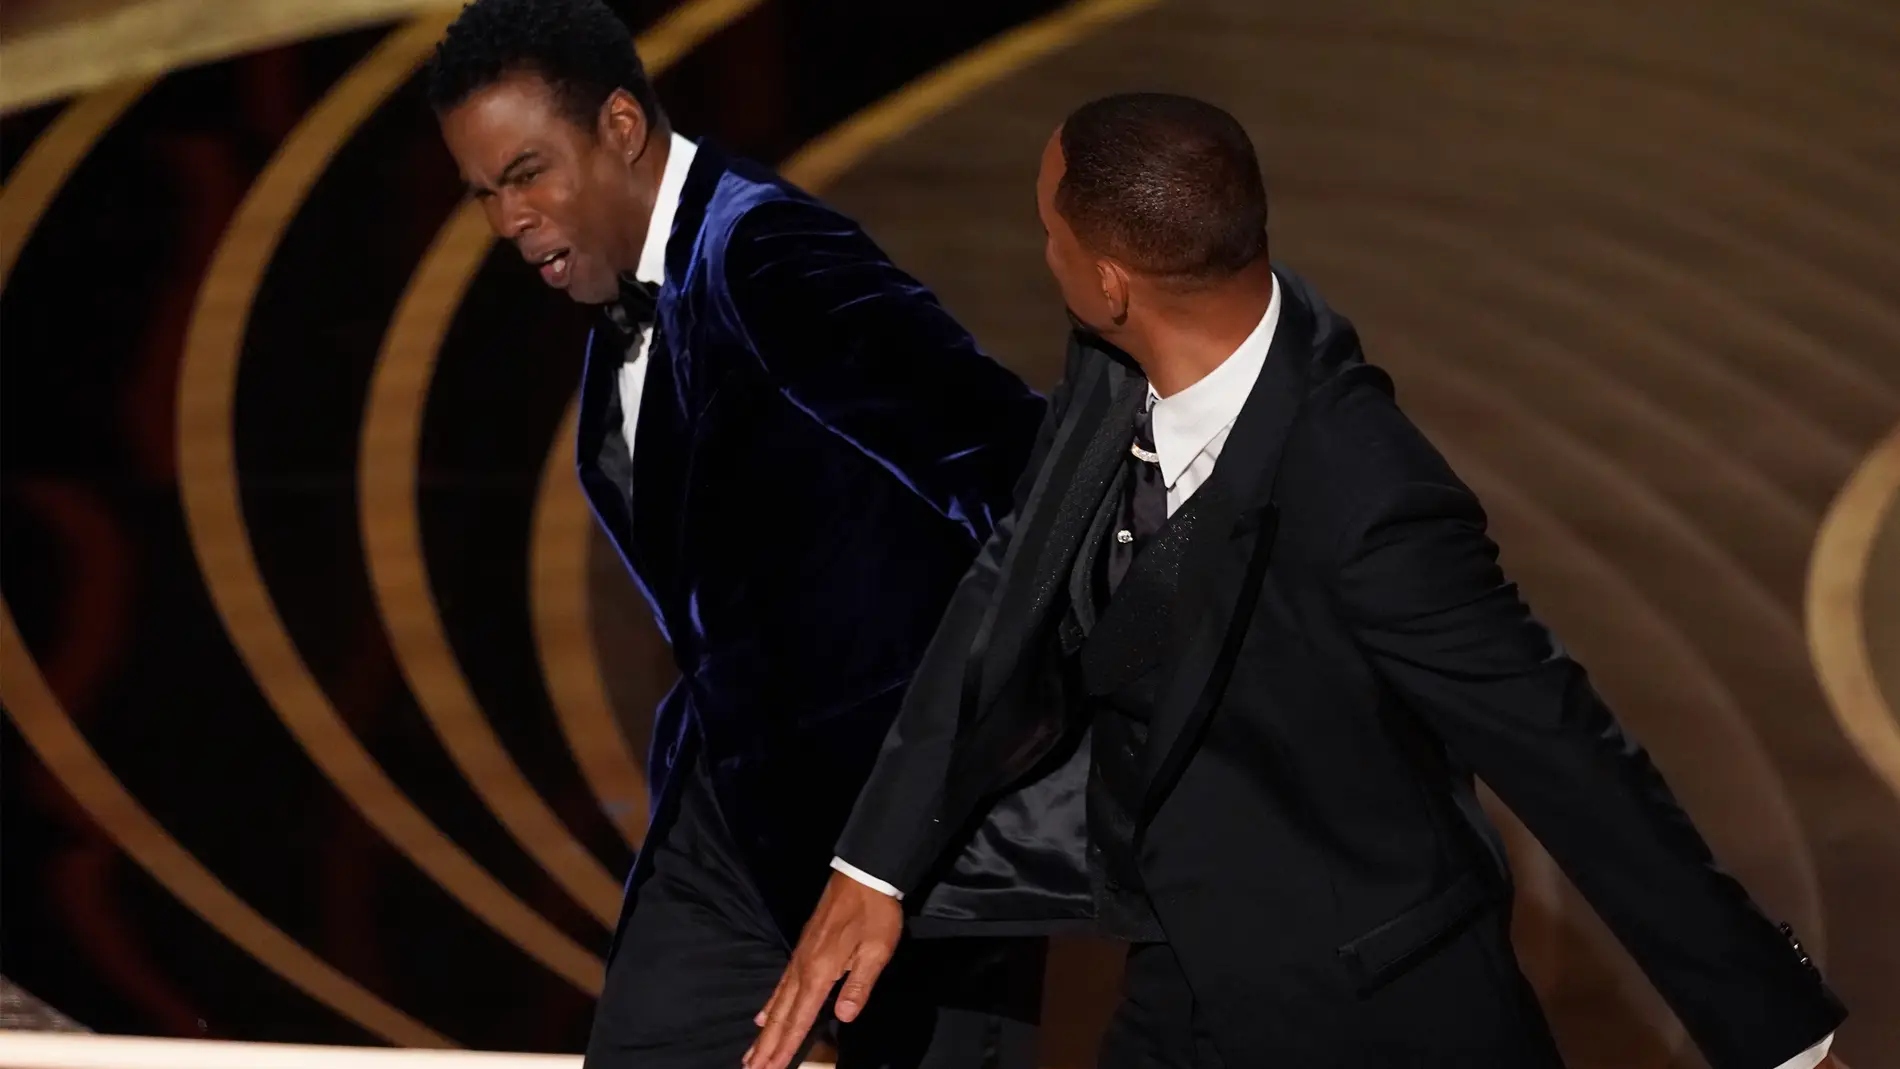 La reacción de Nicole Kidman al tortazo de Will Smith a Chris Rock es ya  historia de los Oscar 2022 | Europa FM